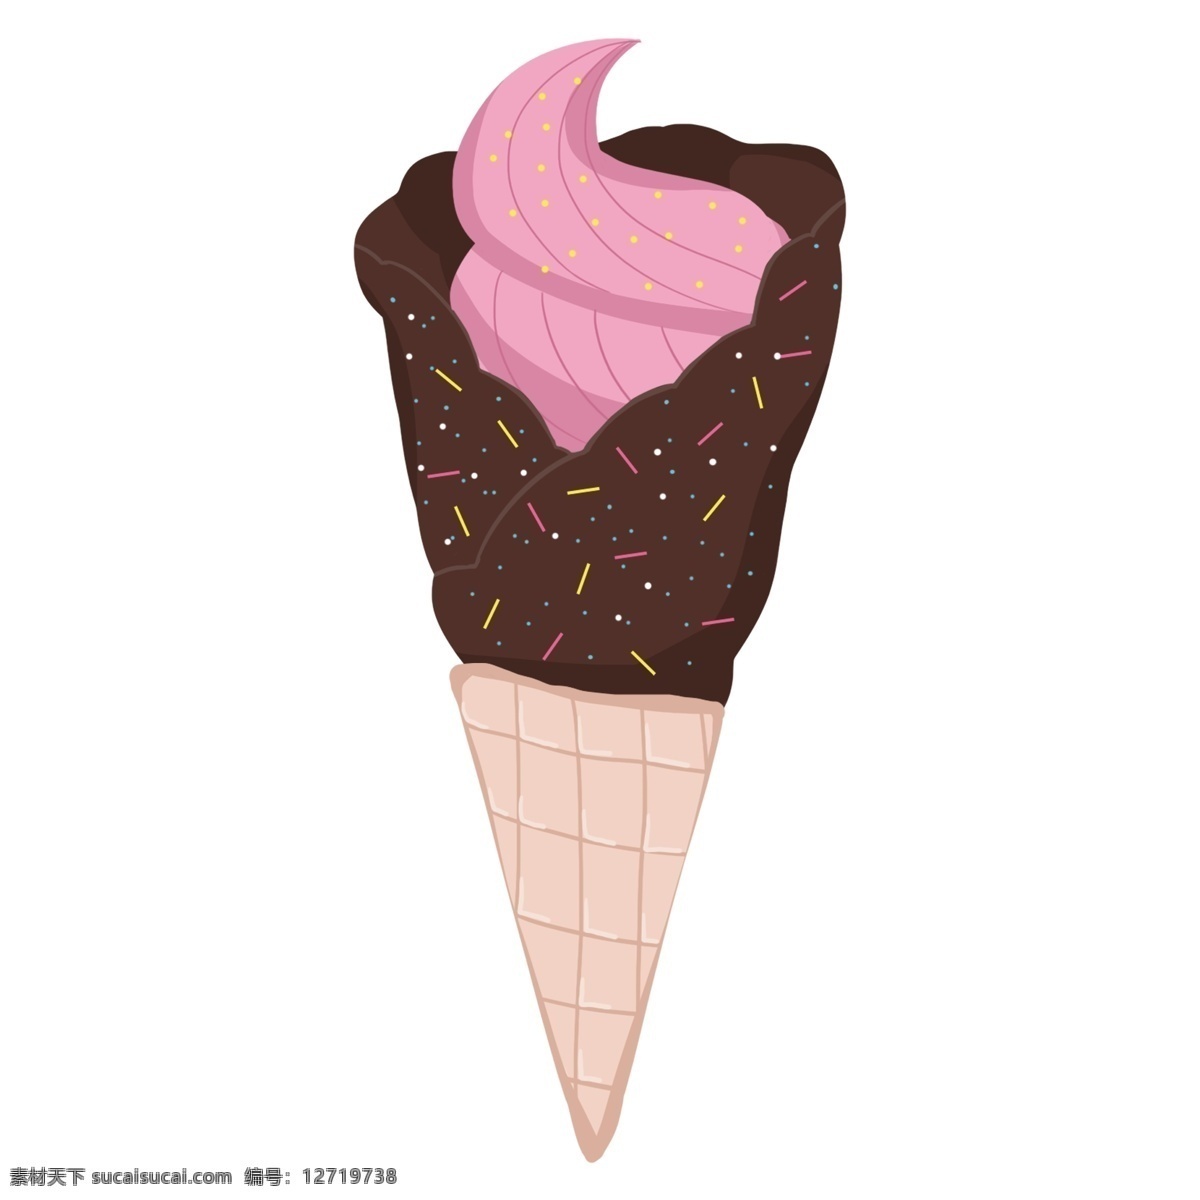 紫色 冰淇淋 插画 紫色的冰淇淋 夏日冰淇淋 漂亮的冰淇淋 冰淇淋装饰 冰淇淋插画 立体冰淇淋